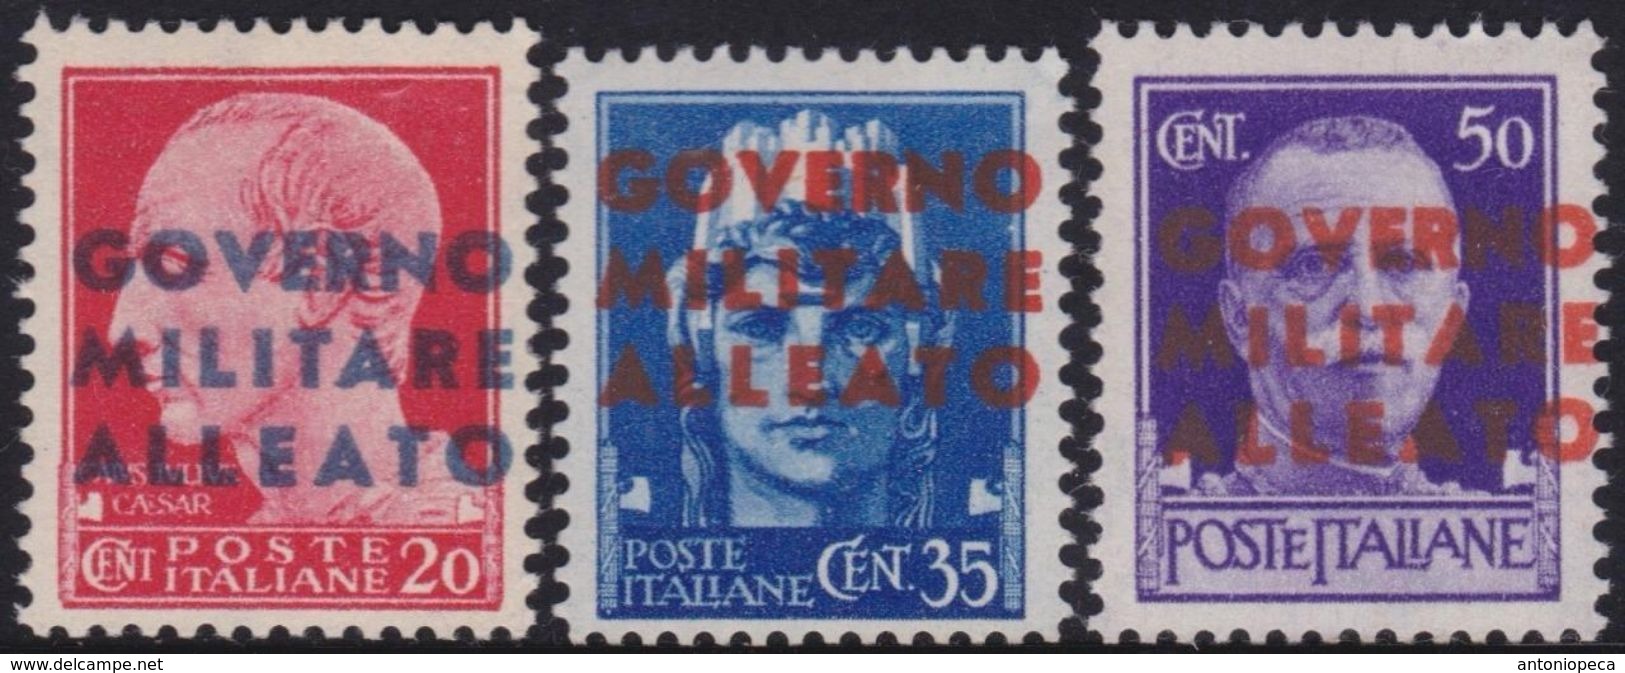 OCCUPAZIONE ALLEATA NAPOLI 1943 Serie Completa 3v​ Gomma Integra, MNH** - Occup. Anglo-americana: Napoli